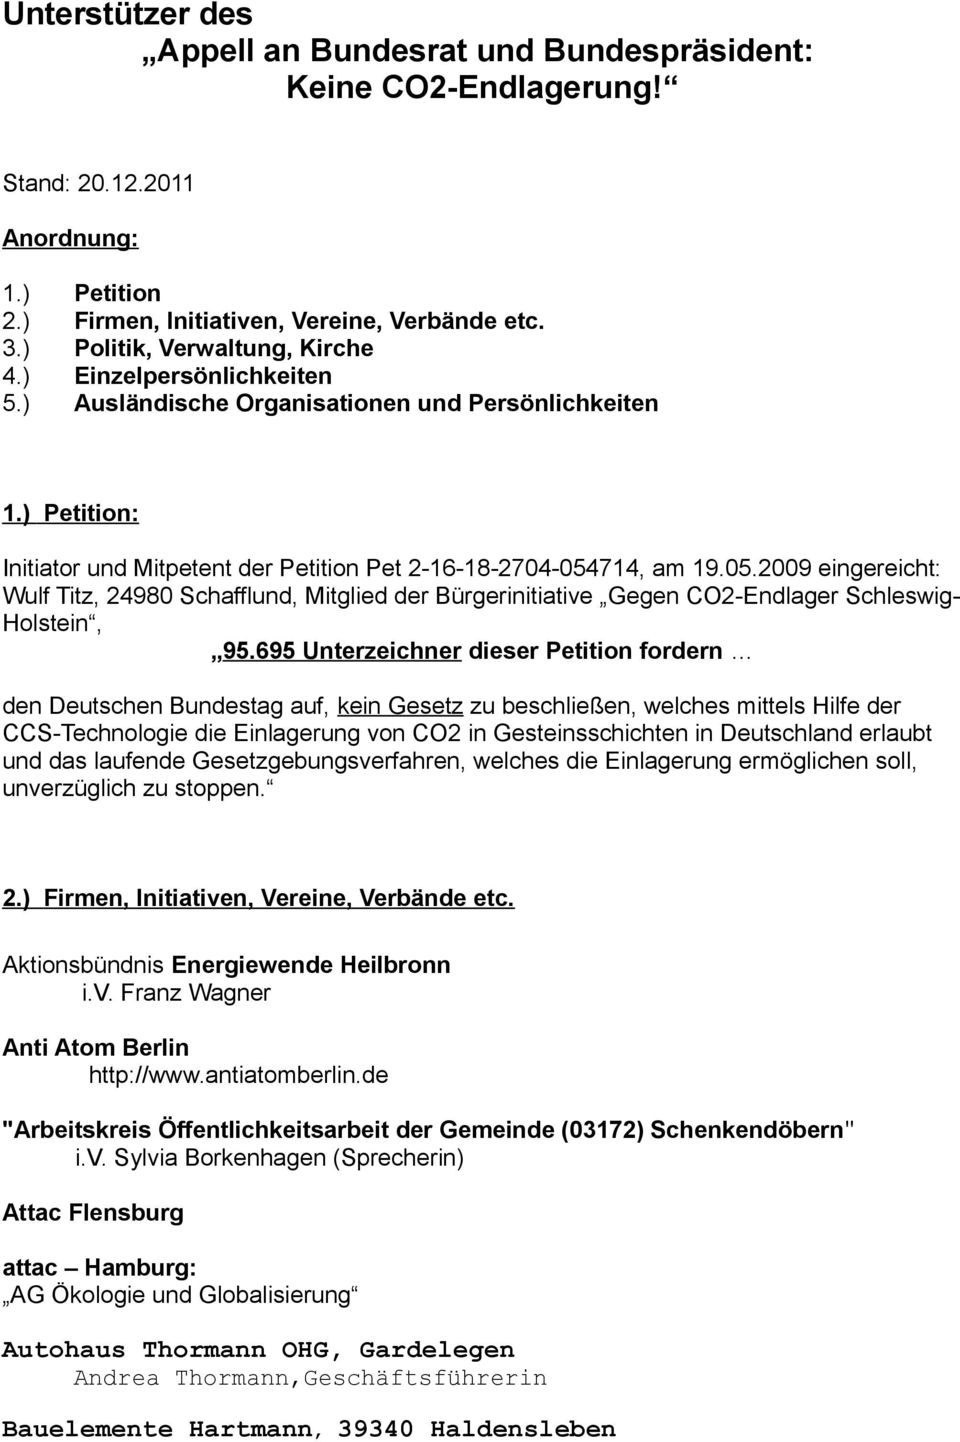 714, am 19.05.2009 eingereicht: Wulf Titz, 24980 Schafflund, Mitglied der Gegen CO2-Endlager Schleswig- Holstein, 95.